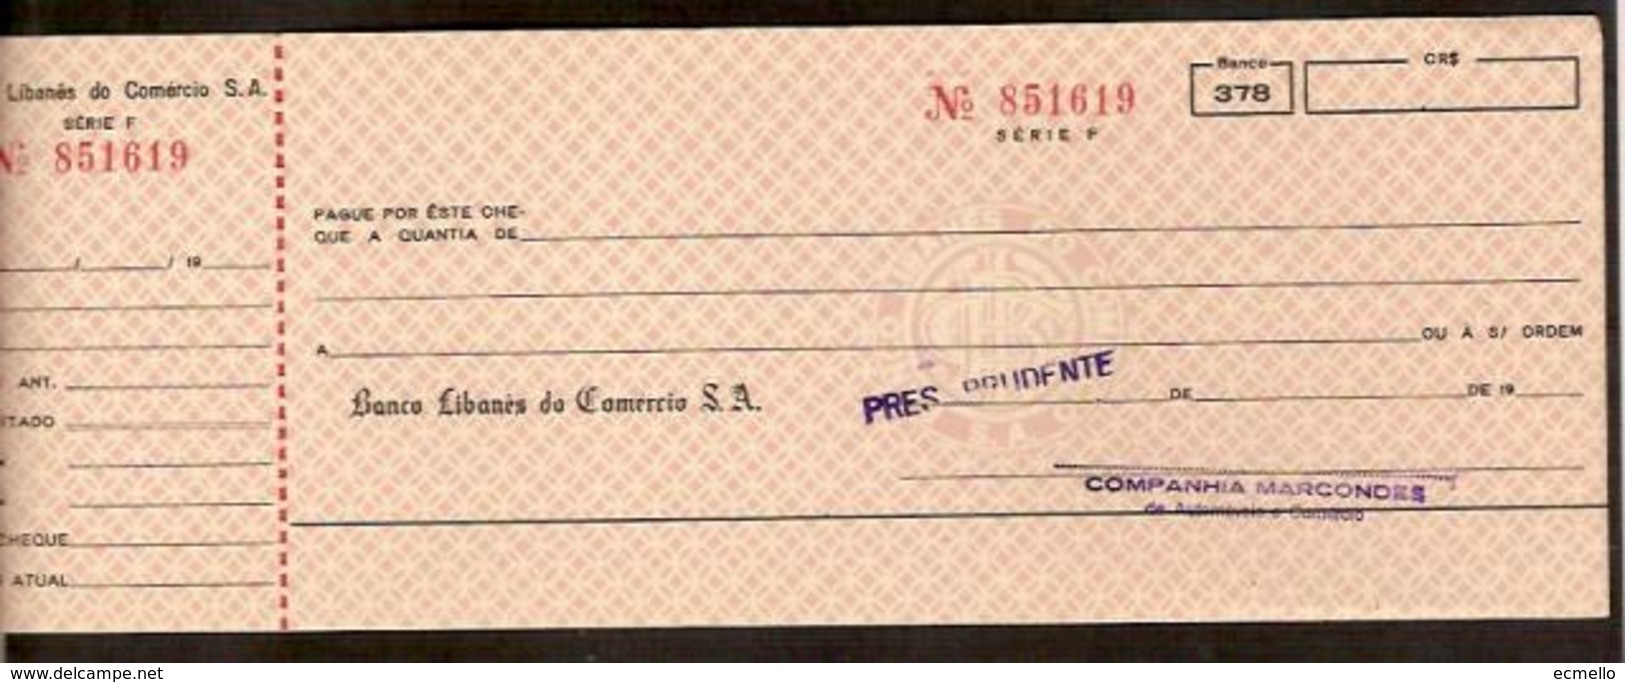 CH299  CHEQUE BANCO LIBANÊS DO COMÉRCIO AG. PRES. PRUDENTE 1960'S NCR$ LEBANESE BANK - Chèques & Chèques De Voyage